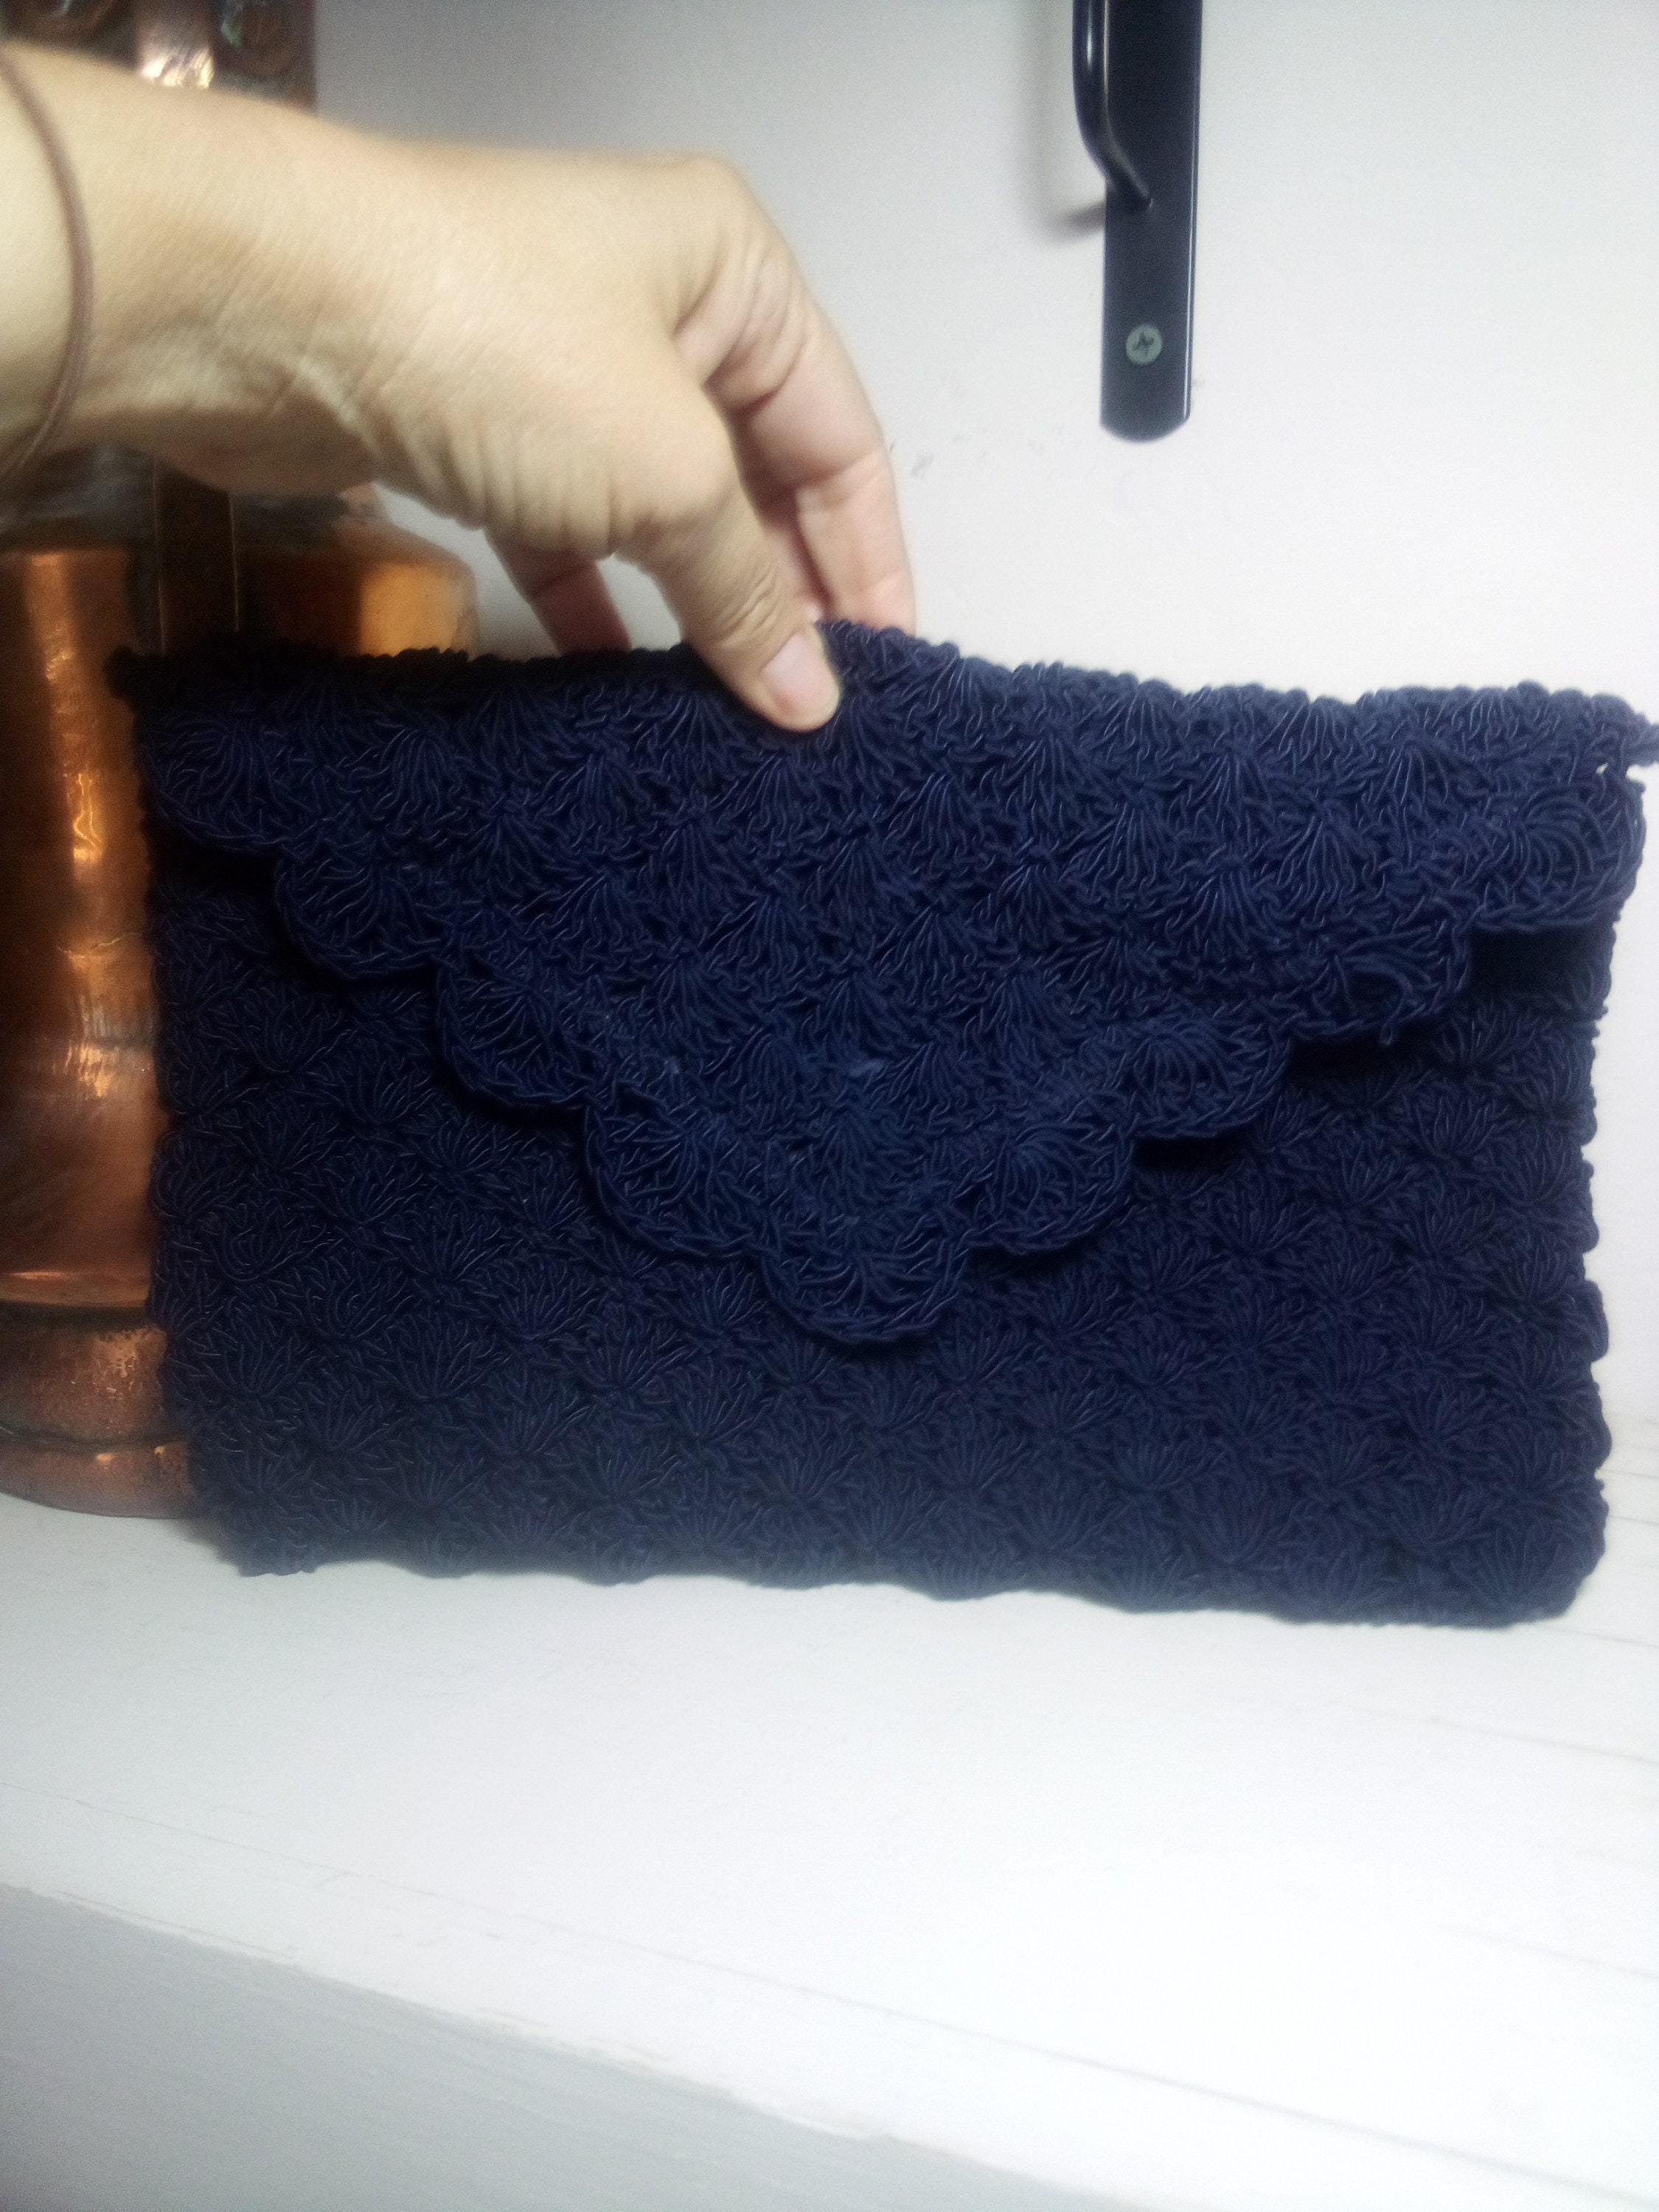 Maatir Crochet Handbag India Navy Crocheted Tote Bag, Crochet Purse Bag yarn, Crochet Purse, Vegan Bag, Handmade crochet yarn handbags